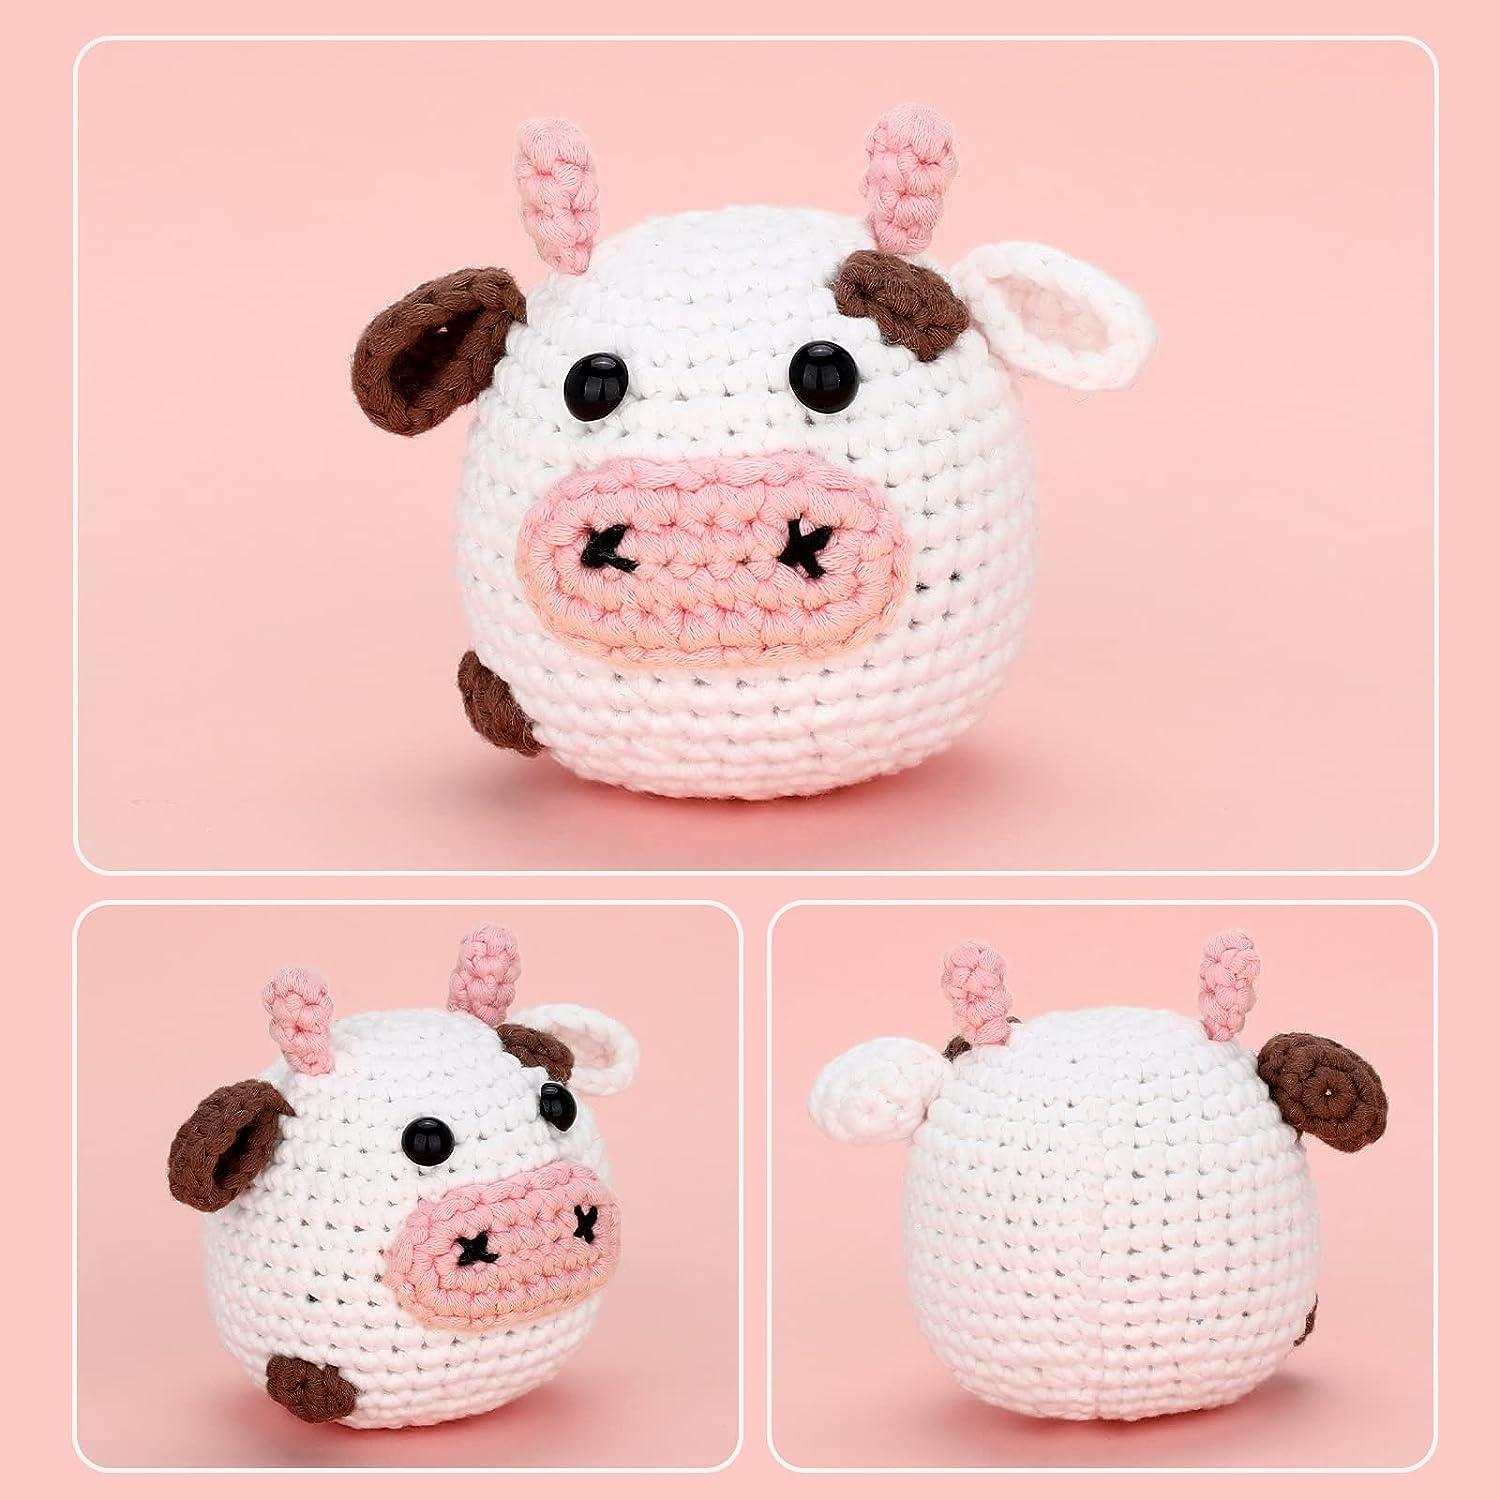 Piggy Crochet Kit. Crochet Kit. Crochet Materials. Crochet Pattern.  Amigurumi Crochet. Amigurumi Crochet Pattern. Amigurumi Doll. 